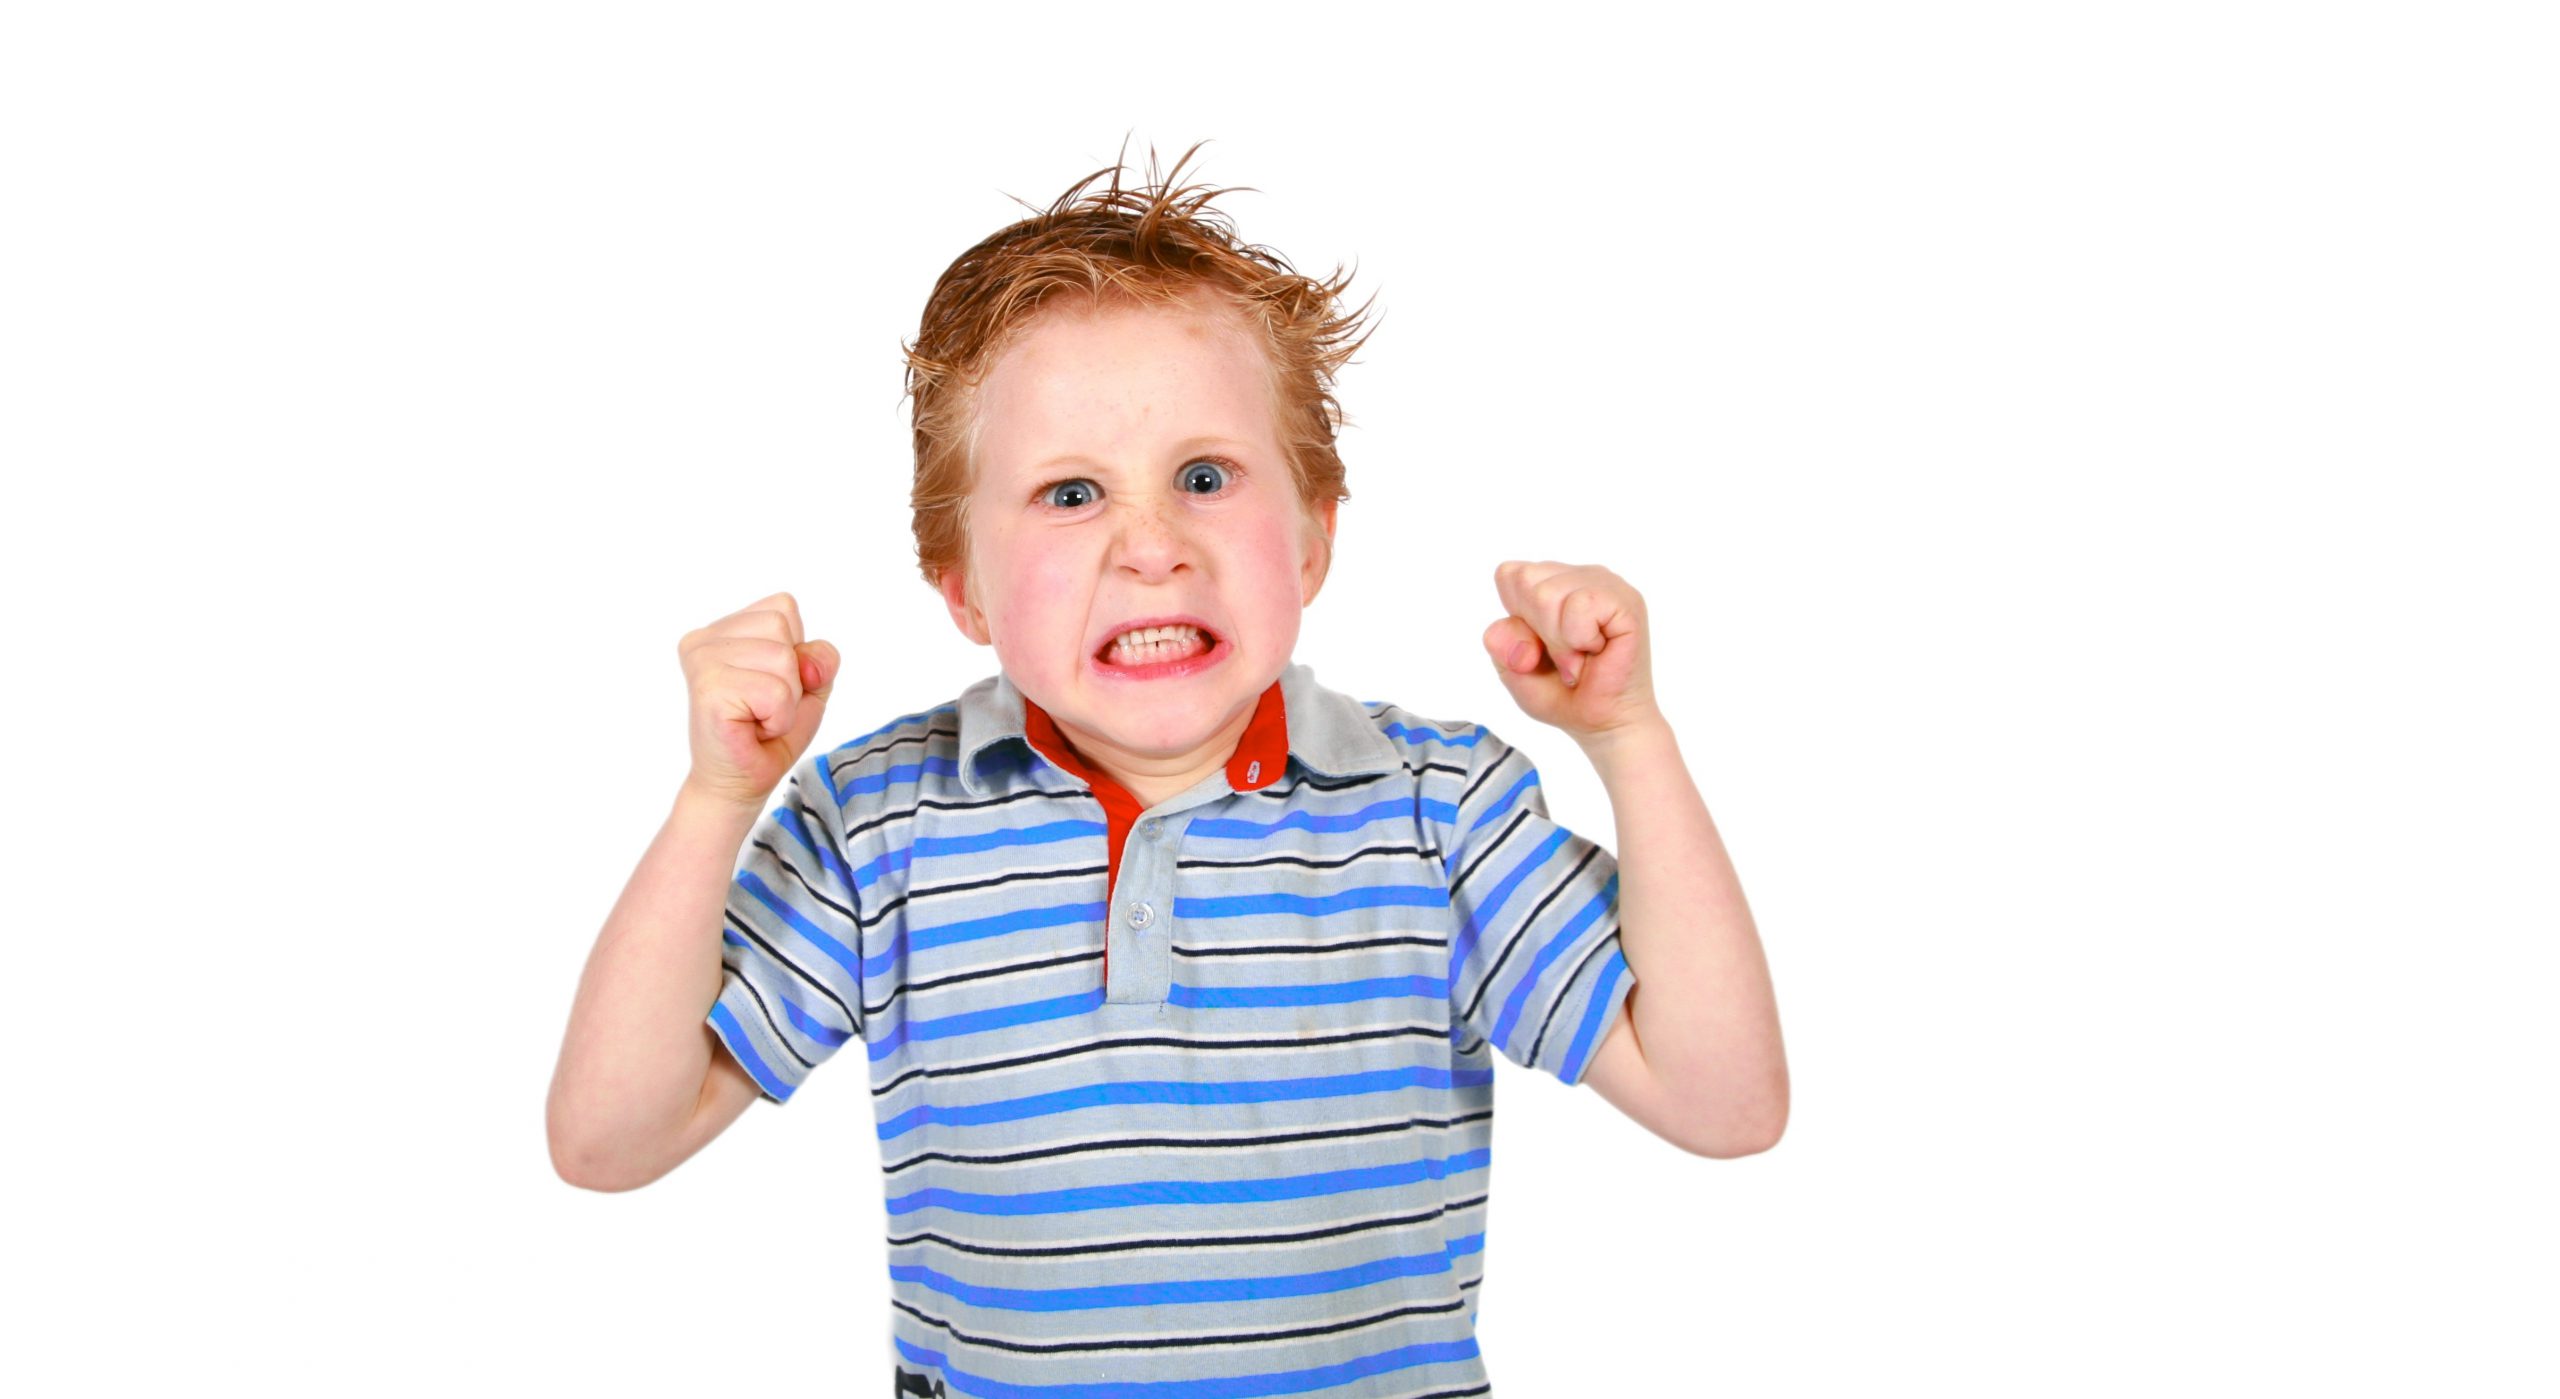 آموزش کنترل خشم به کودکان – بخش هفتم